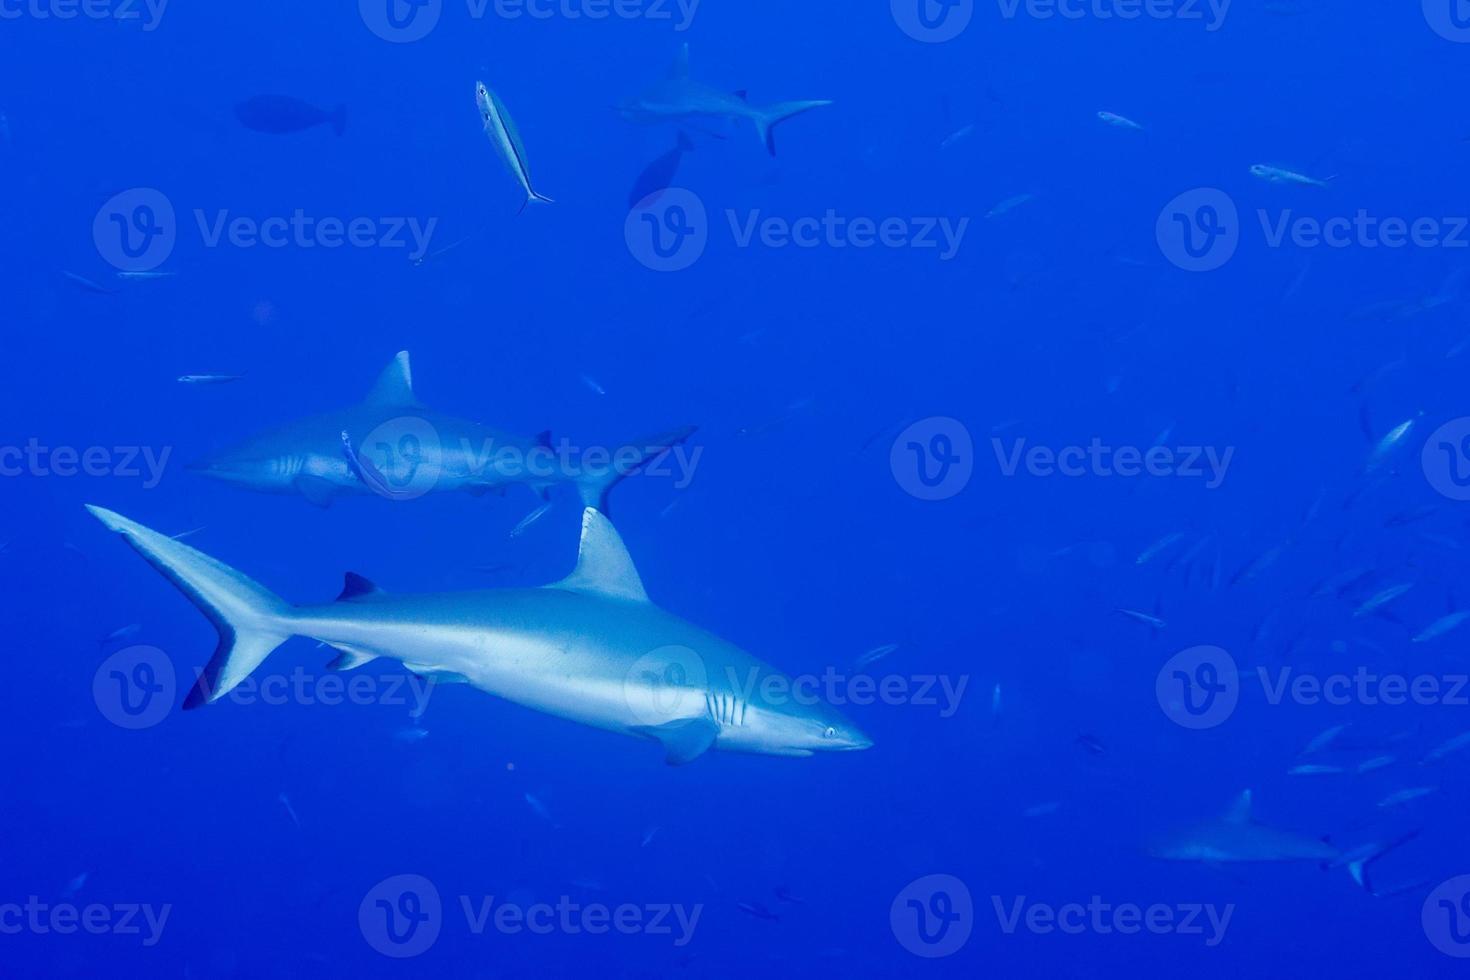 grigio squalo pronto per attacco subacqueo foto